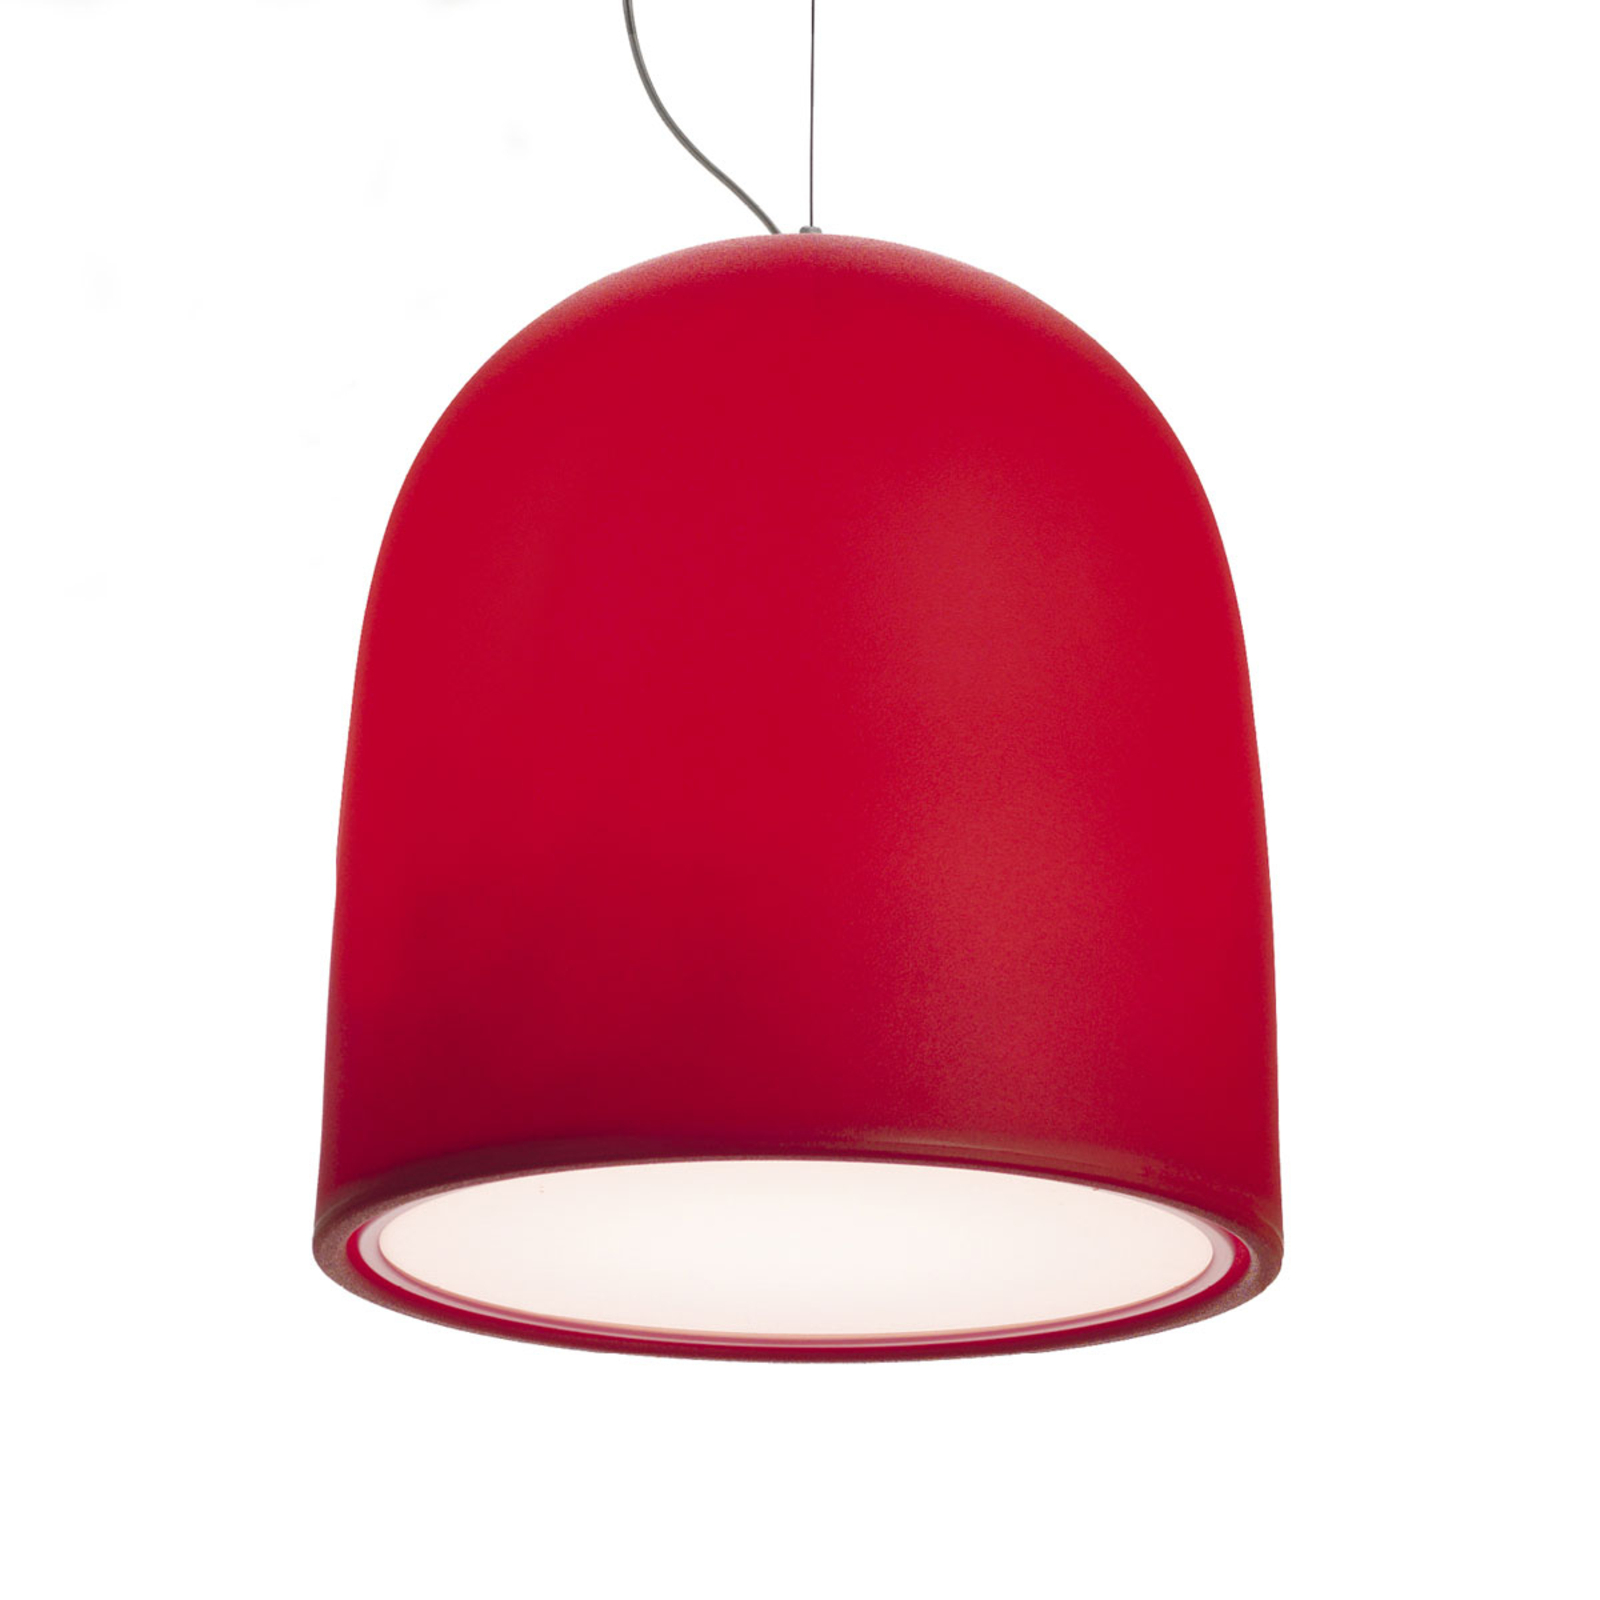 Modo Luce Campanone lampa wisząca Ø 51 cm czerwona